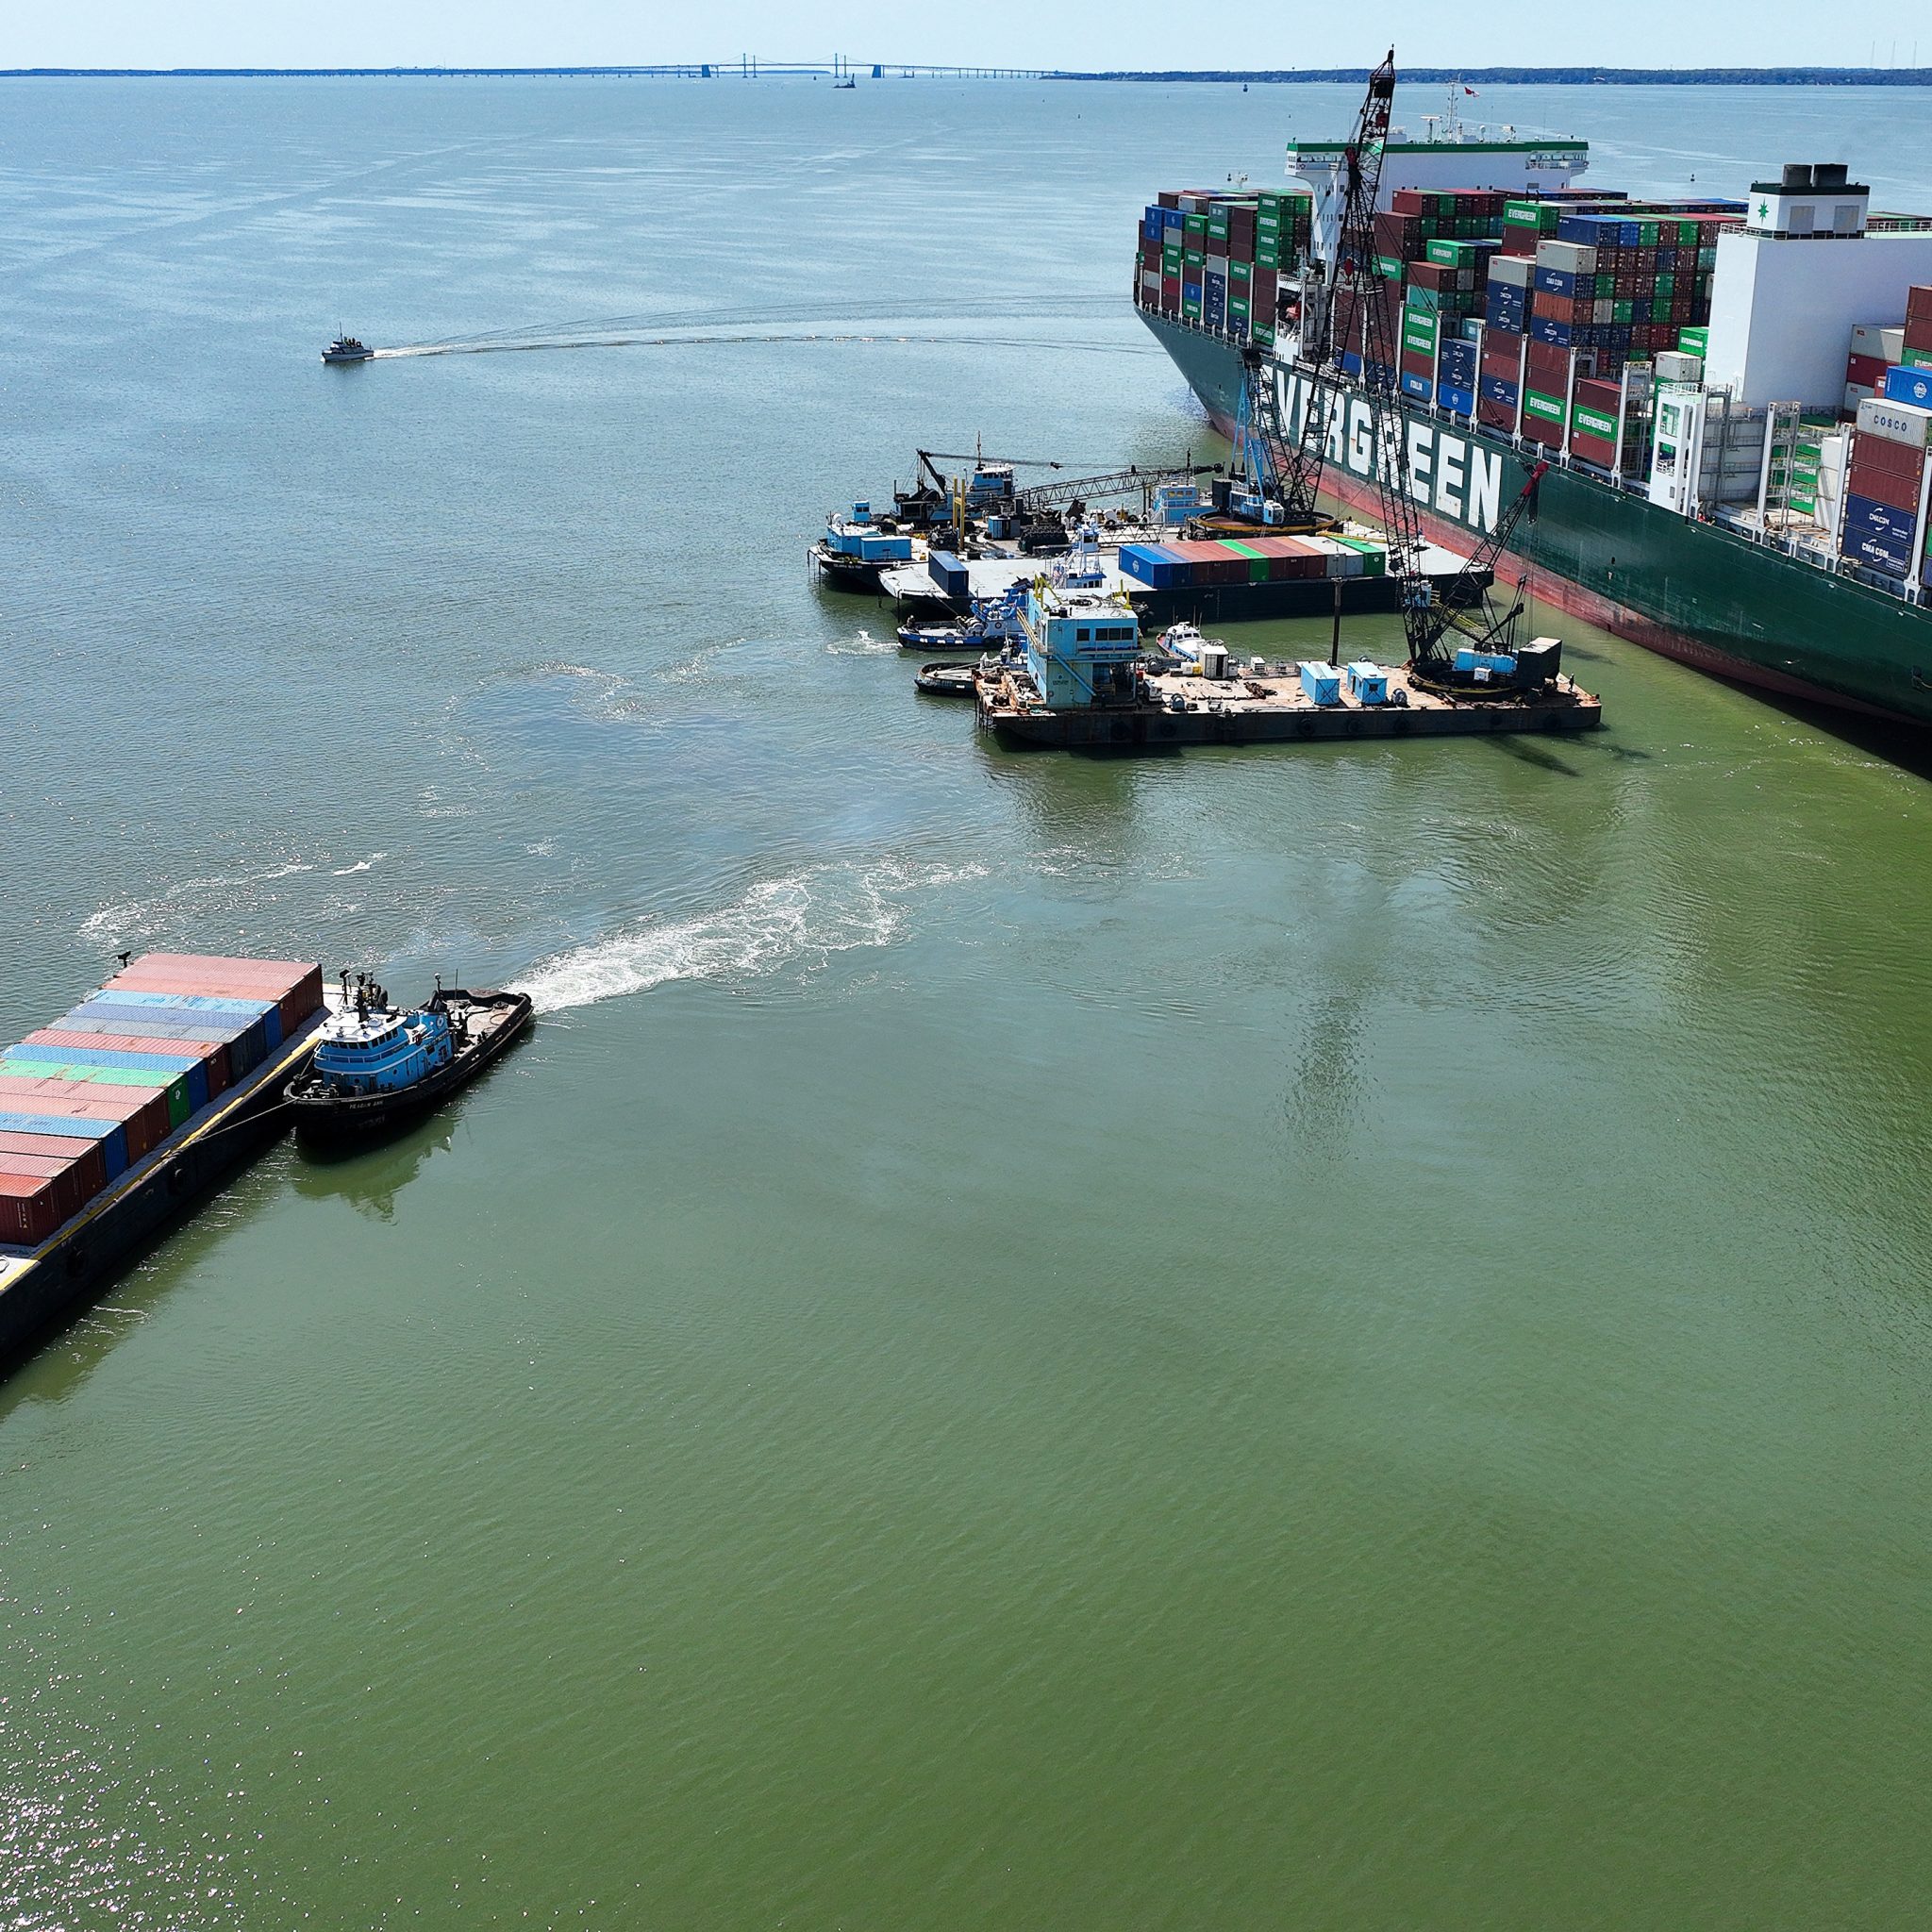 Op zaterdag 9 april werden er 22 containers van boord gehaald. (Foto ANP)